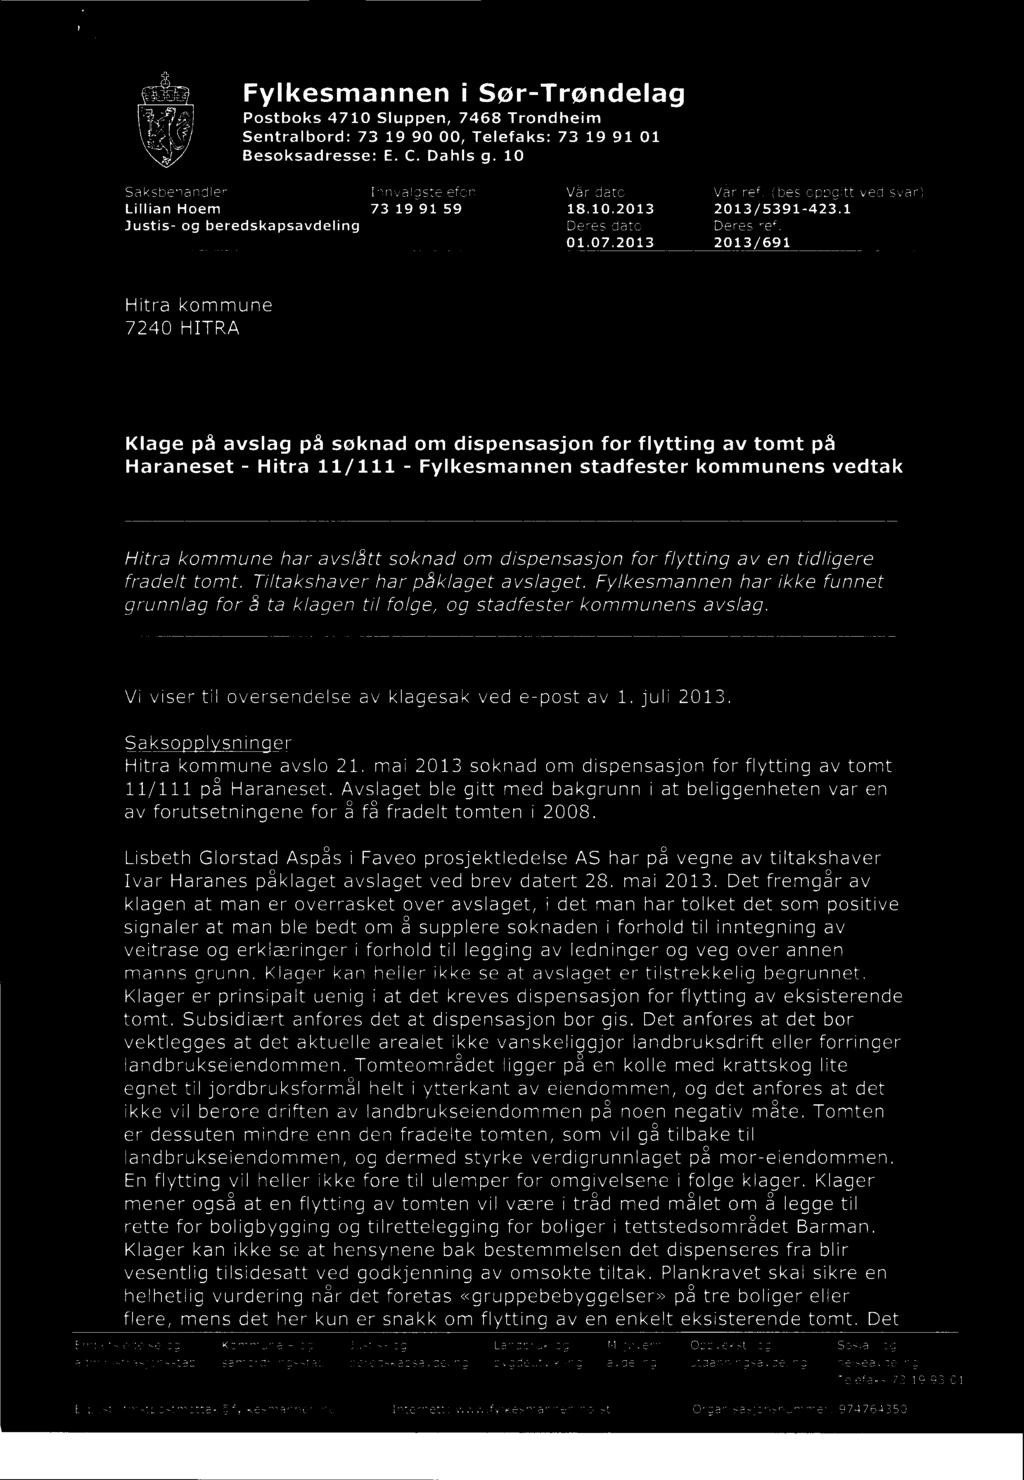 Vi viser til oversendelse av klagesak ved e-post av 1. juli 2013. Sakso I snin er Hitra kommune avslo 21. mai 2013 søknad om dispensasjon for flytting av tomt 11/111 på Haraneset.